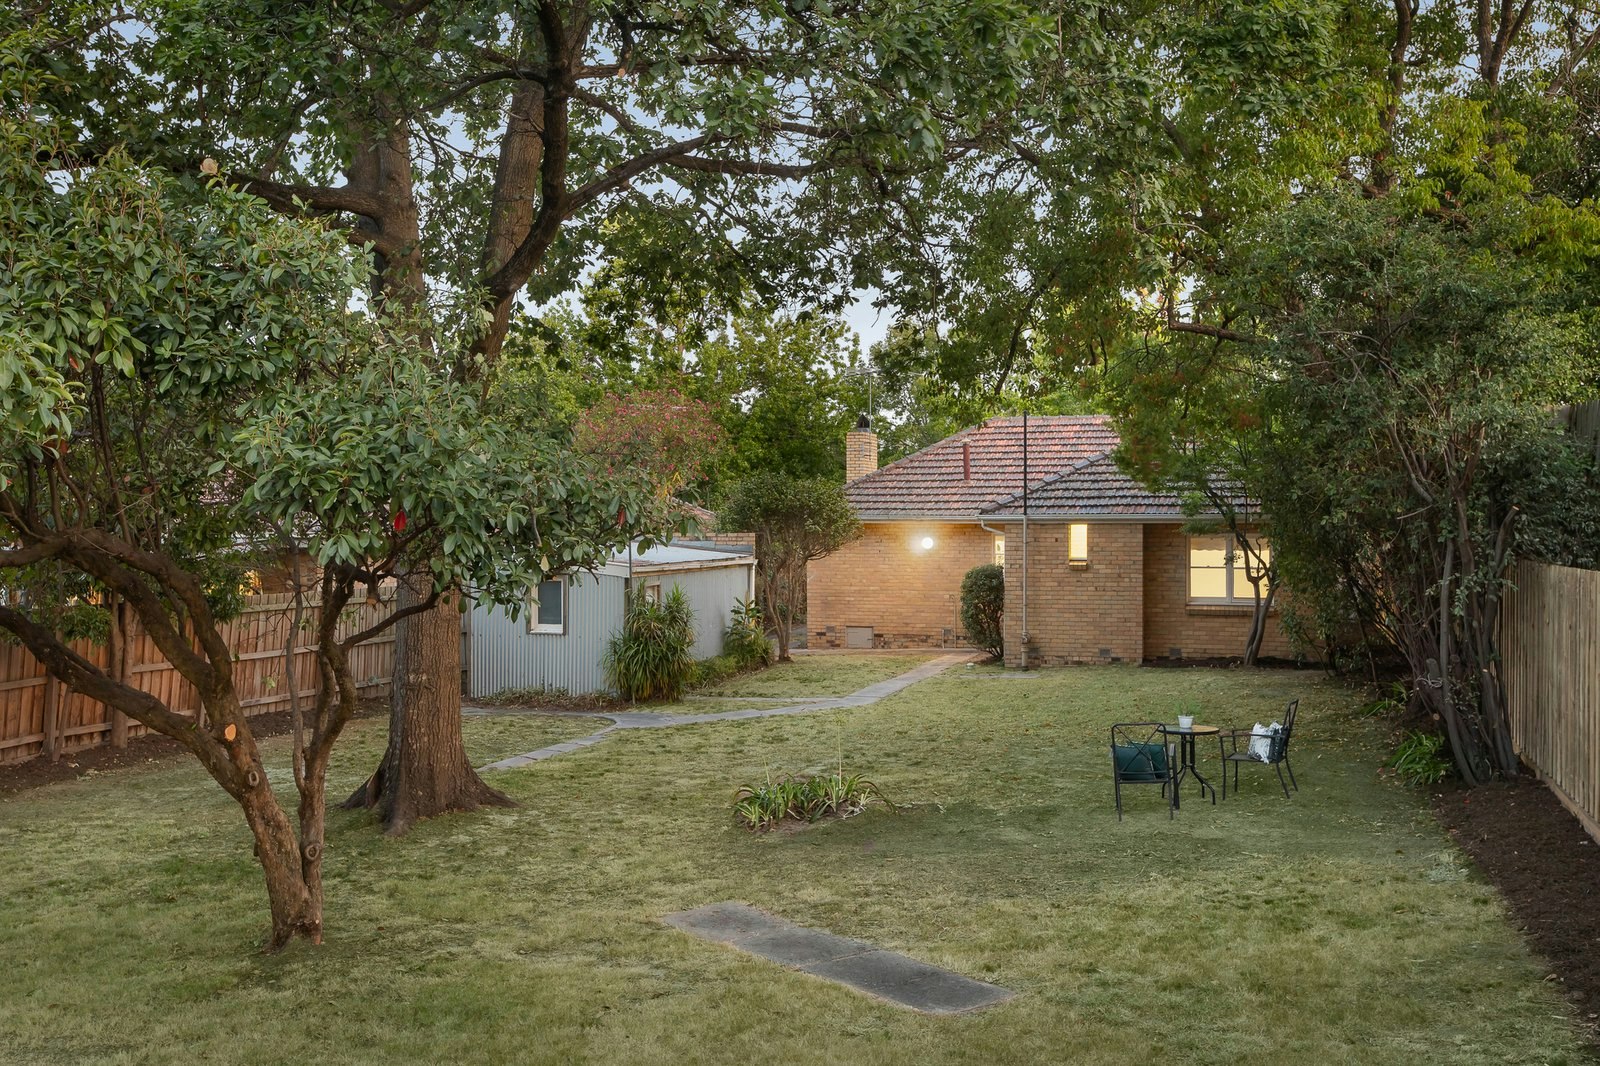 Image of backyard